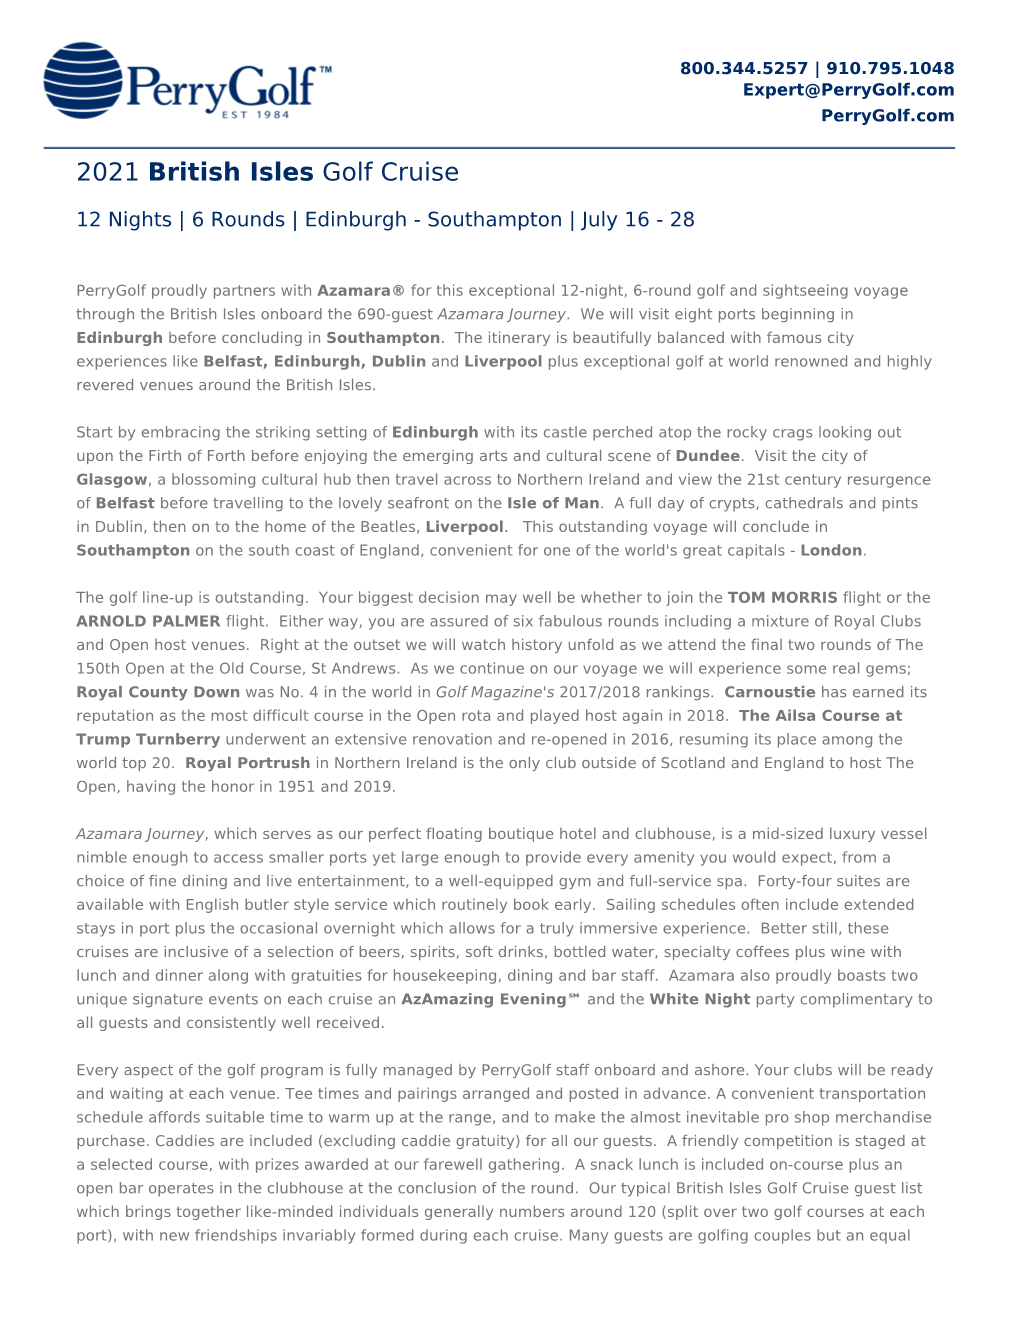 2021 British Isles Golf Cruise